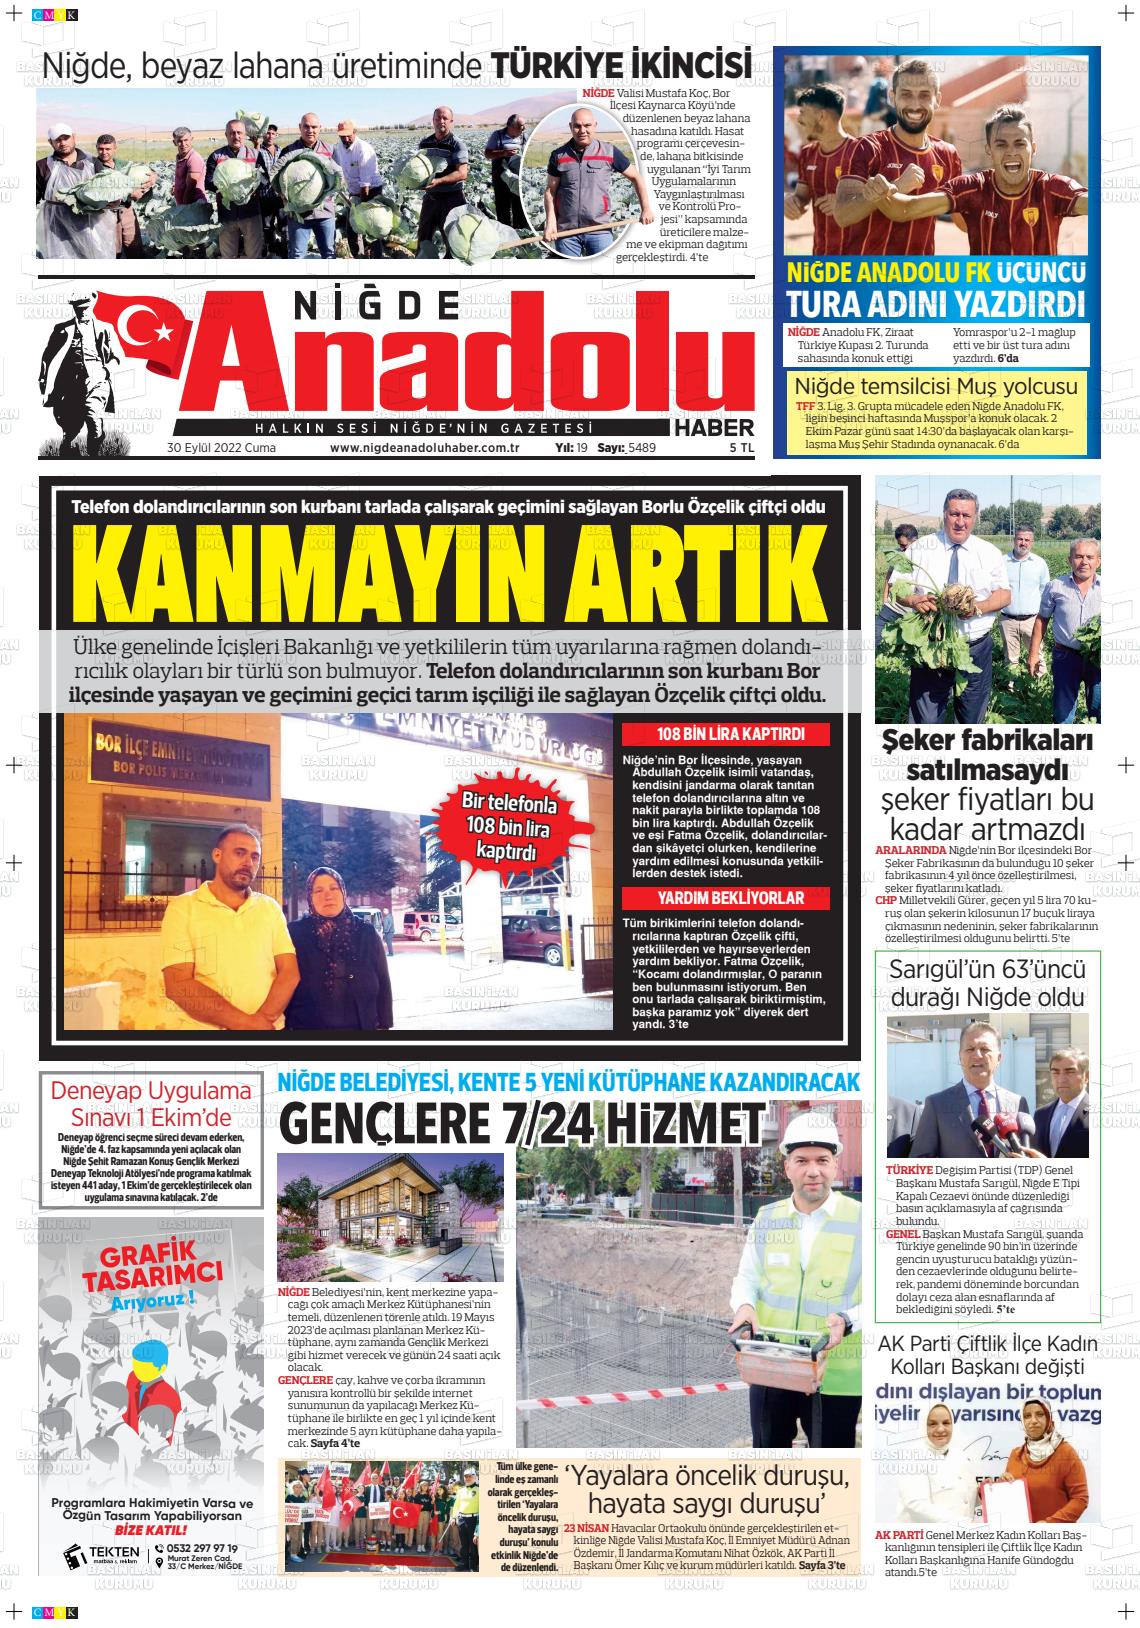 30 Eylül 2022 Niğde Anadolu Haber Gazete Manşeti